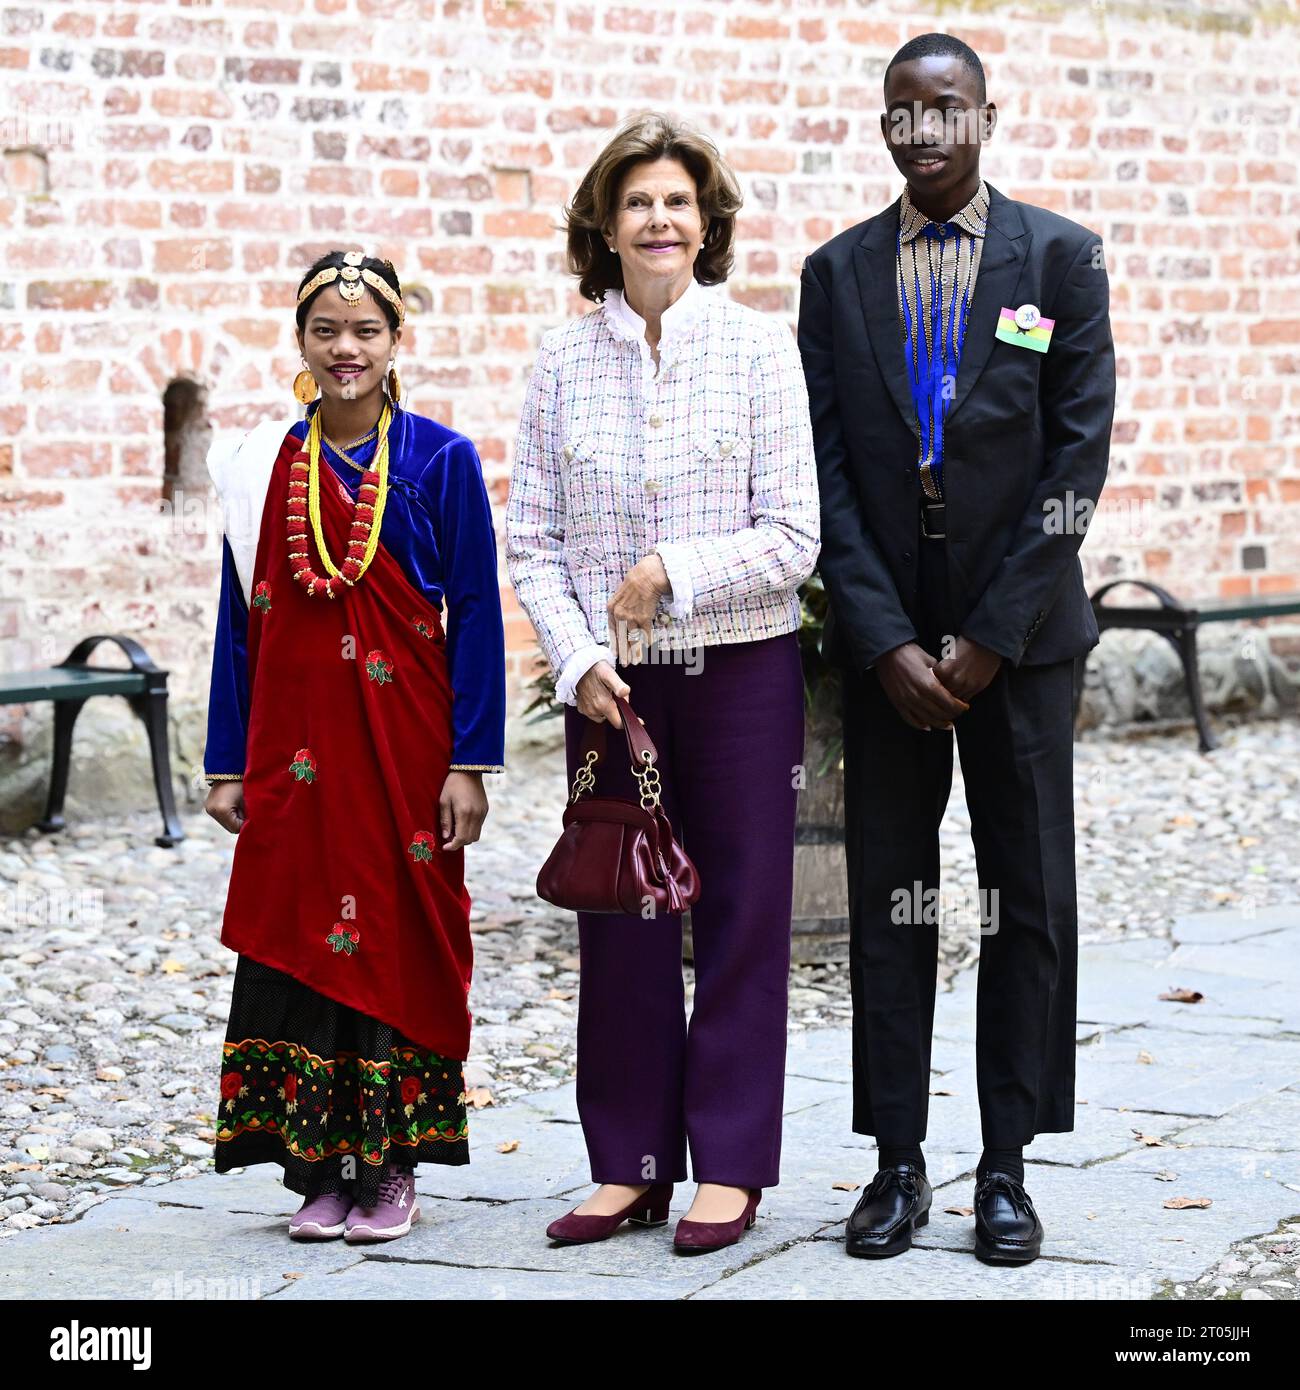 Bindu, 15 ans du Népal, et Kwame, 16 ans du Ghana, ont reçu la reine Silvia à leur arrivée à la cérémonie de remise des prix pour les enfants du monde Banque D'Images